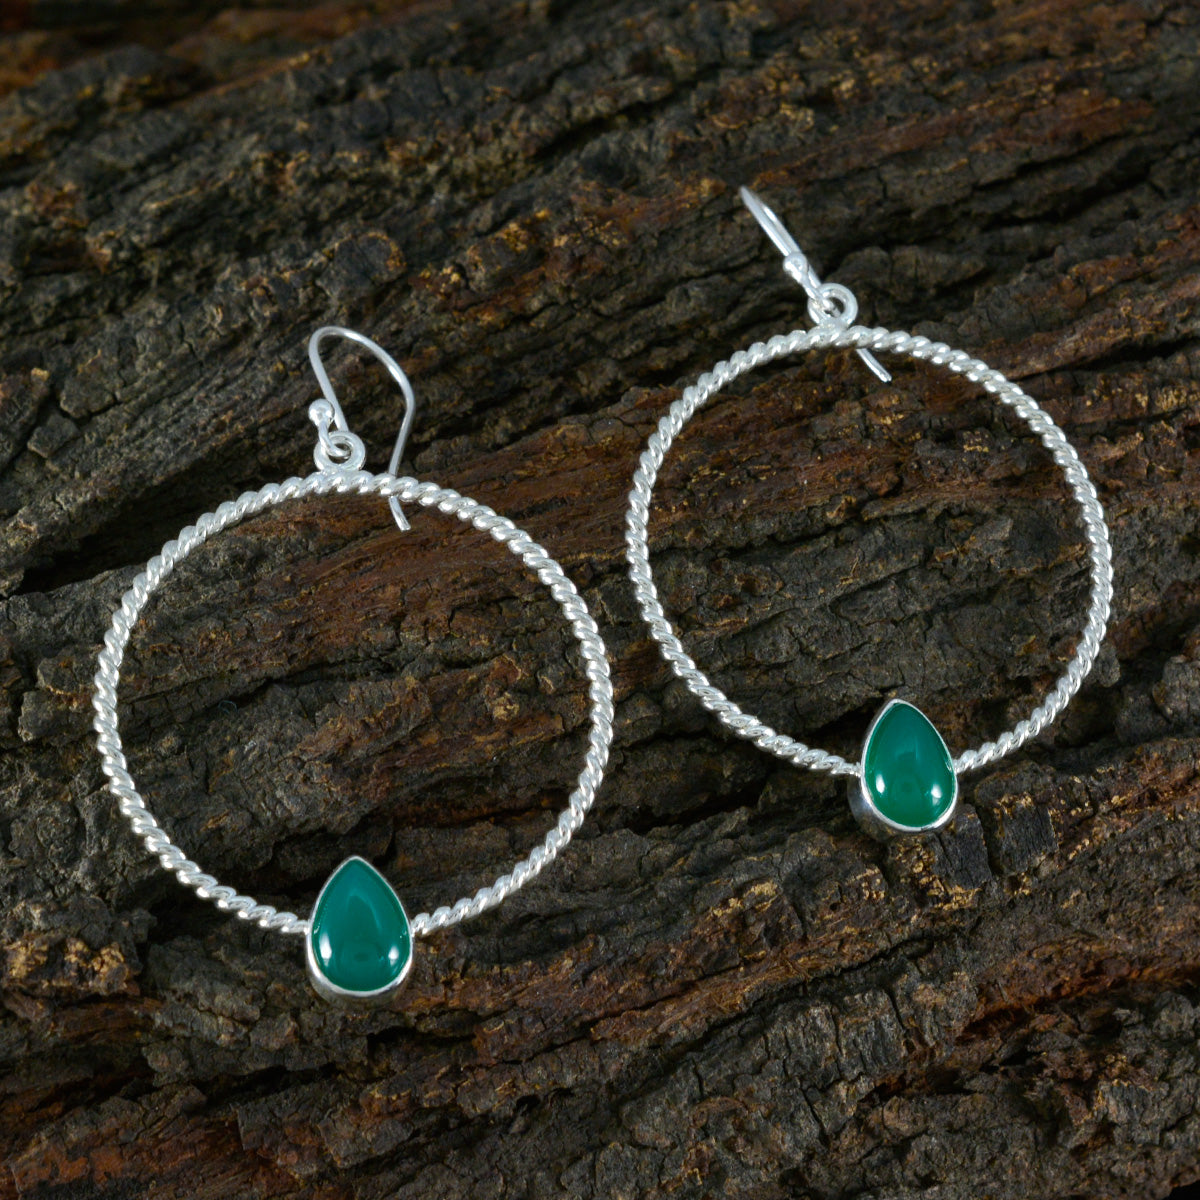 Riyo Glamorous Sterling Silver Earring For Women Green Onyx Earring Bezel Setting Green Earring Dangle Earring